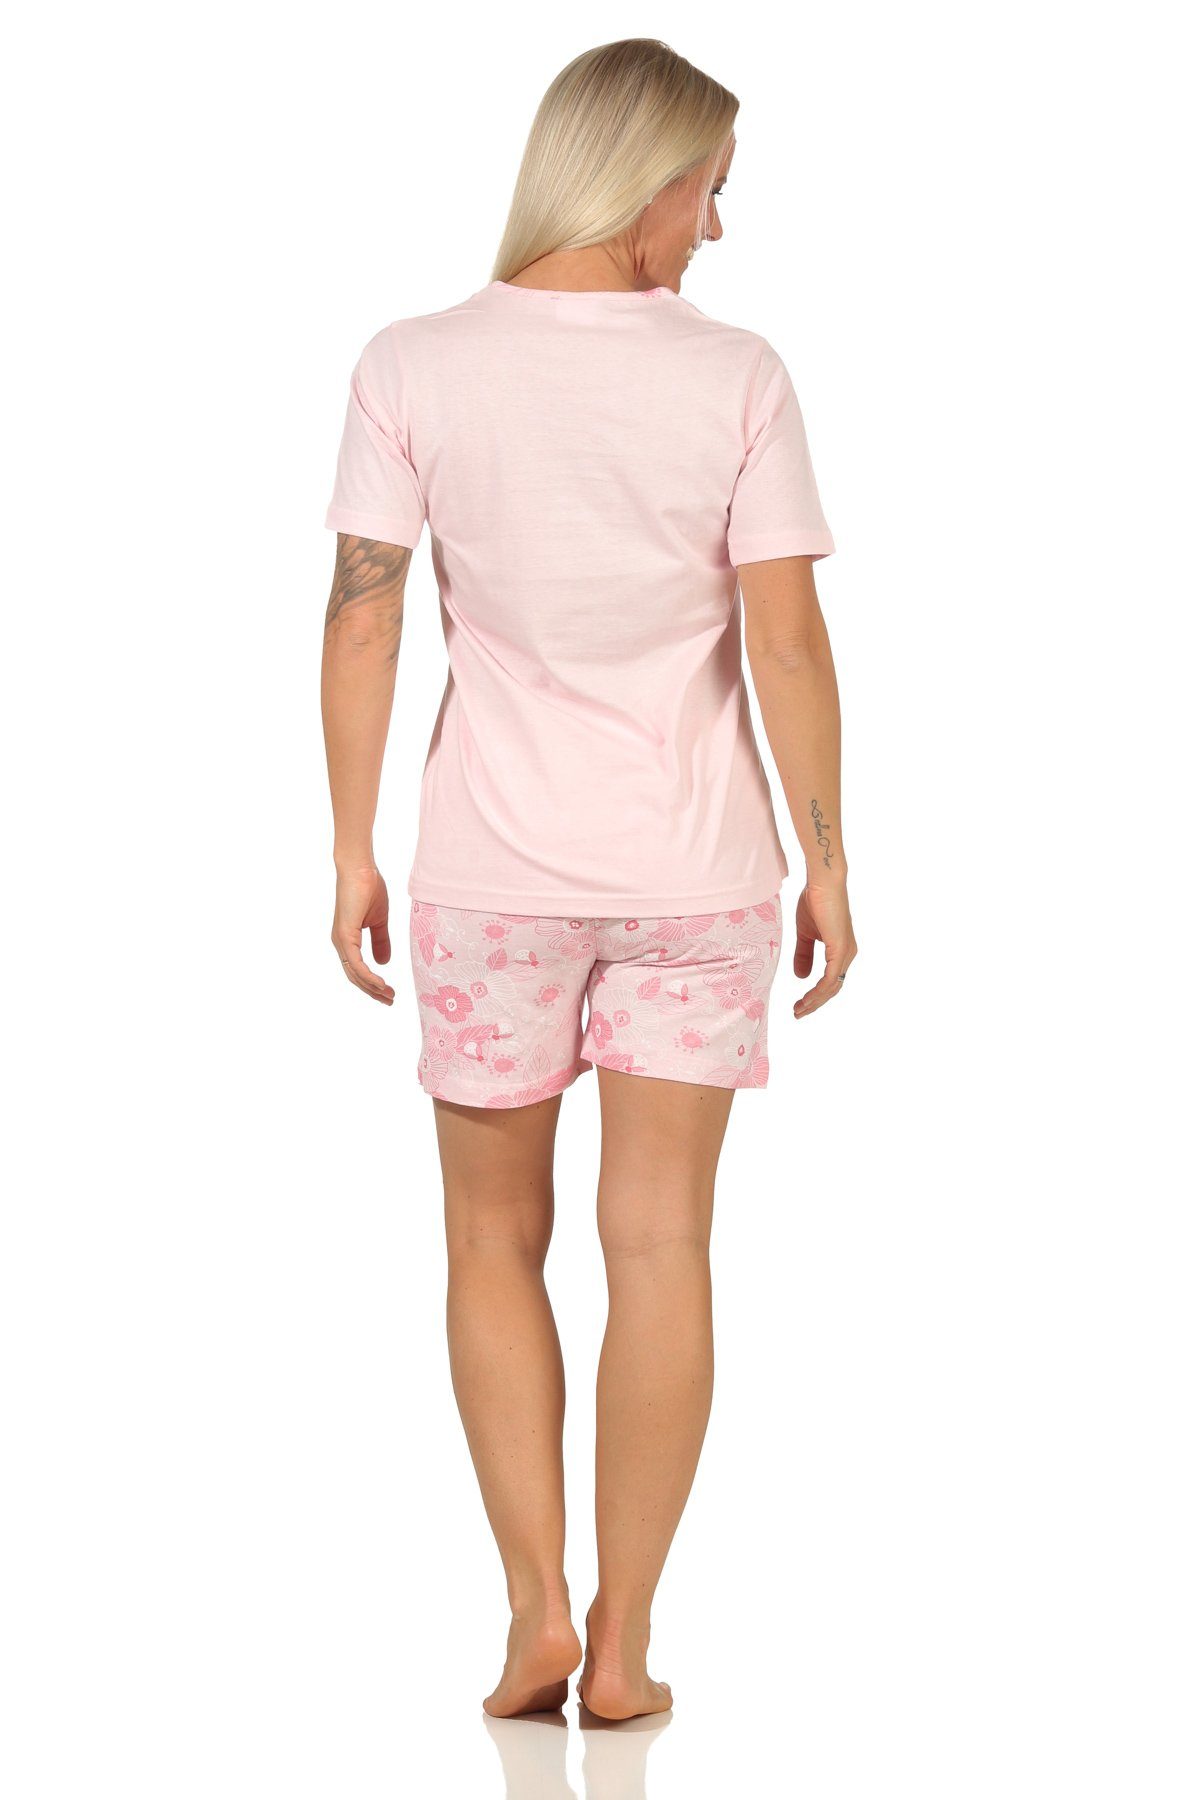 Normann RELAX Pyjama kurzarm, by rosa in Design Damen Pyjama Wunderschöner Shorty sommerlichem